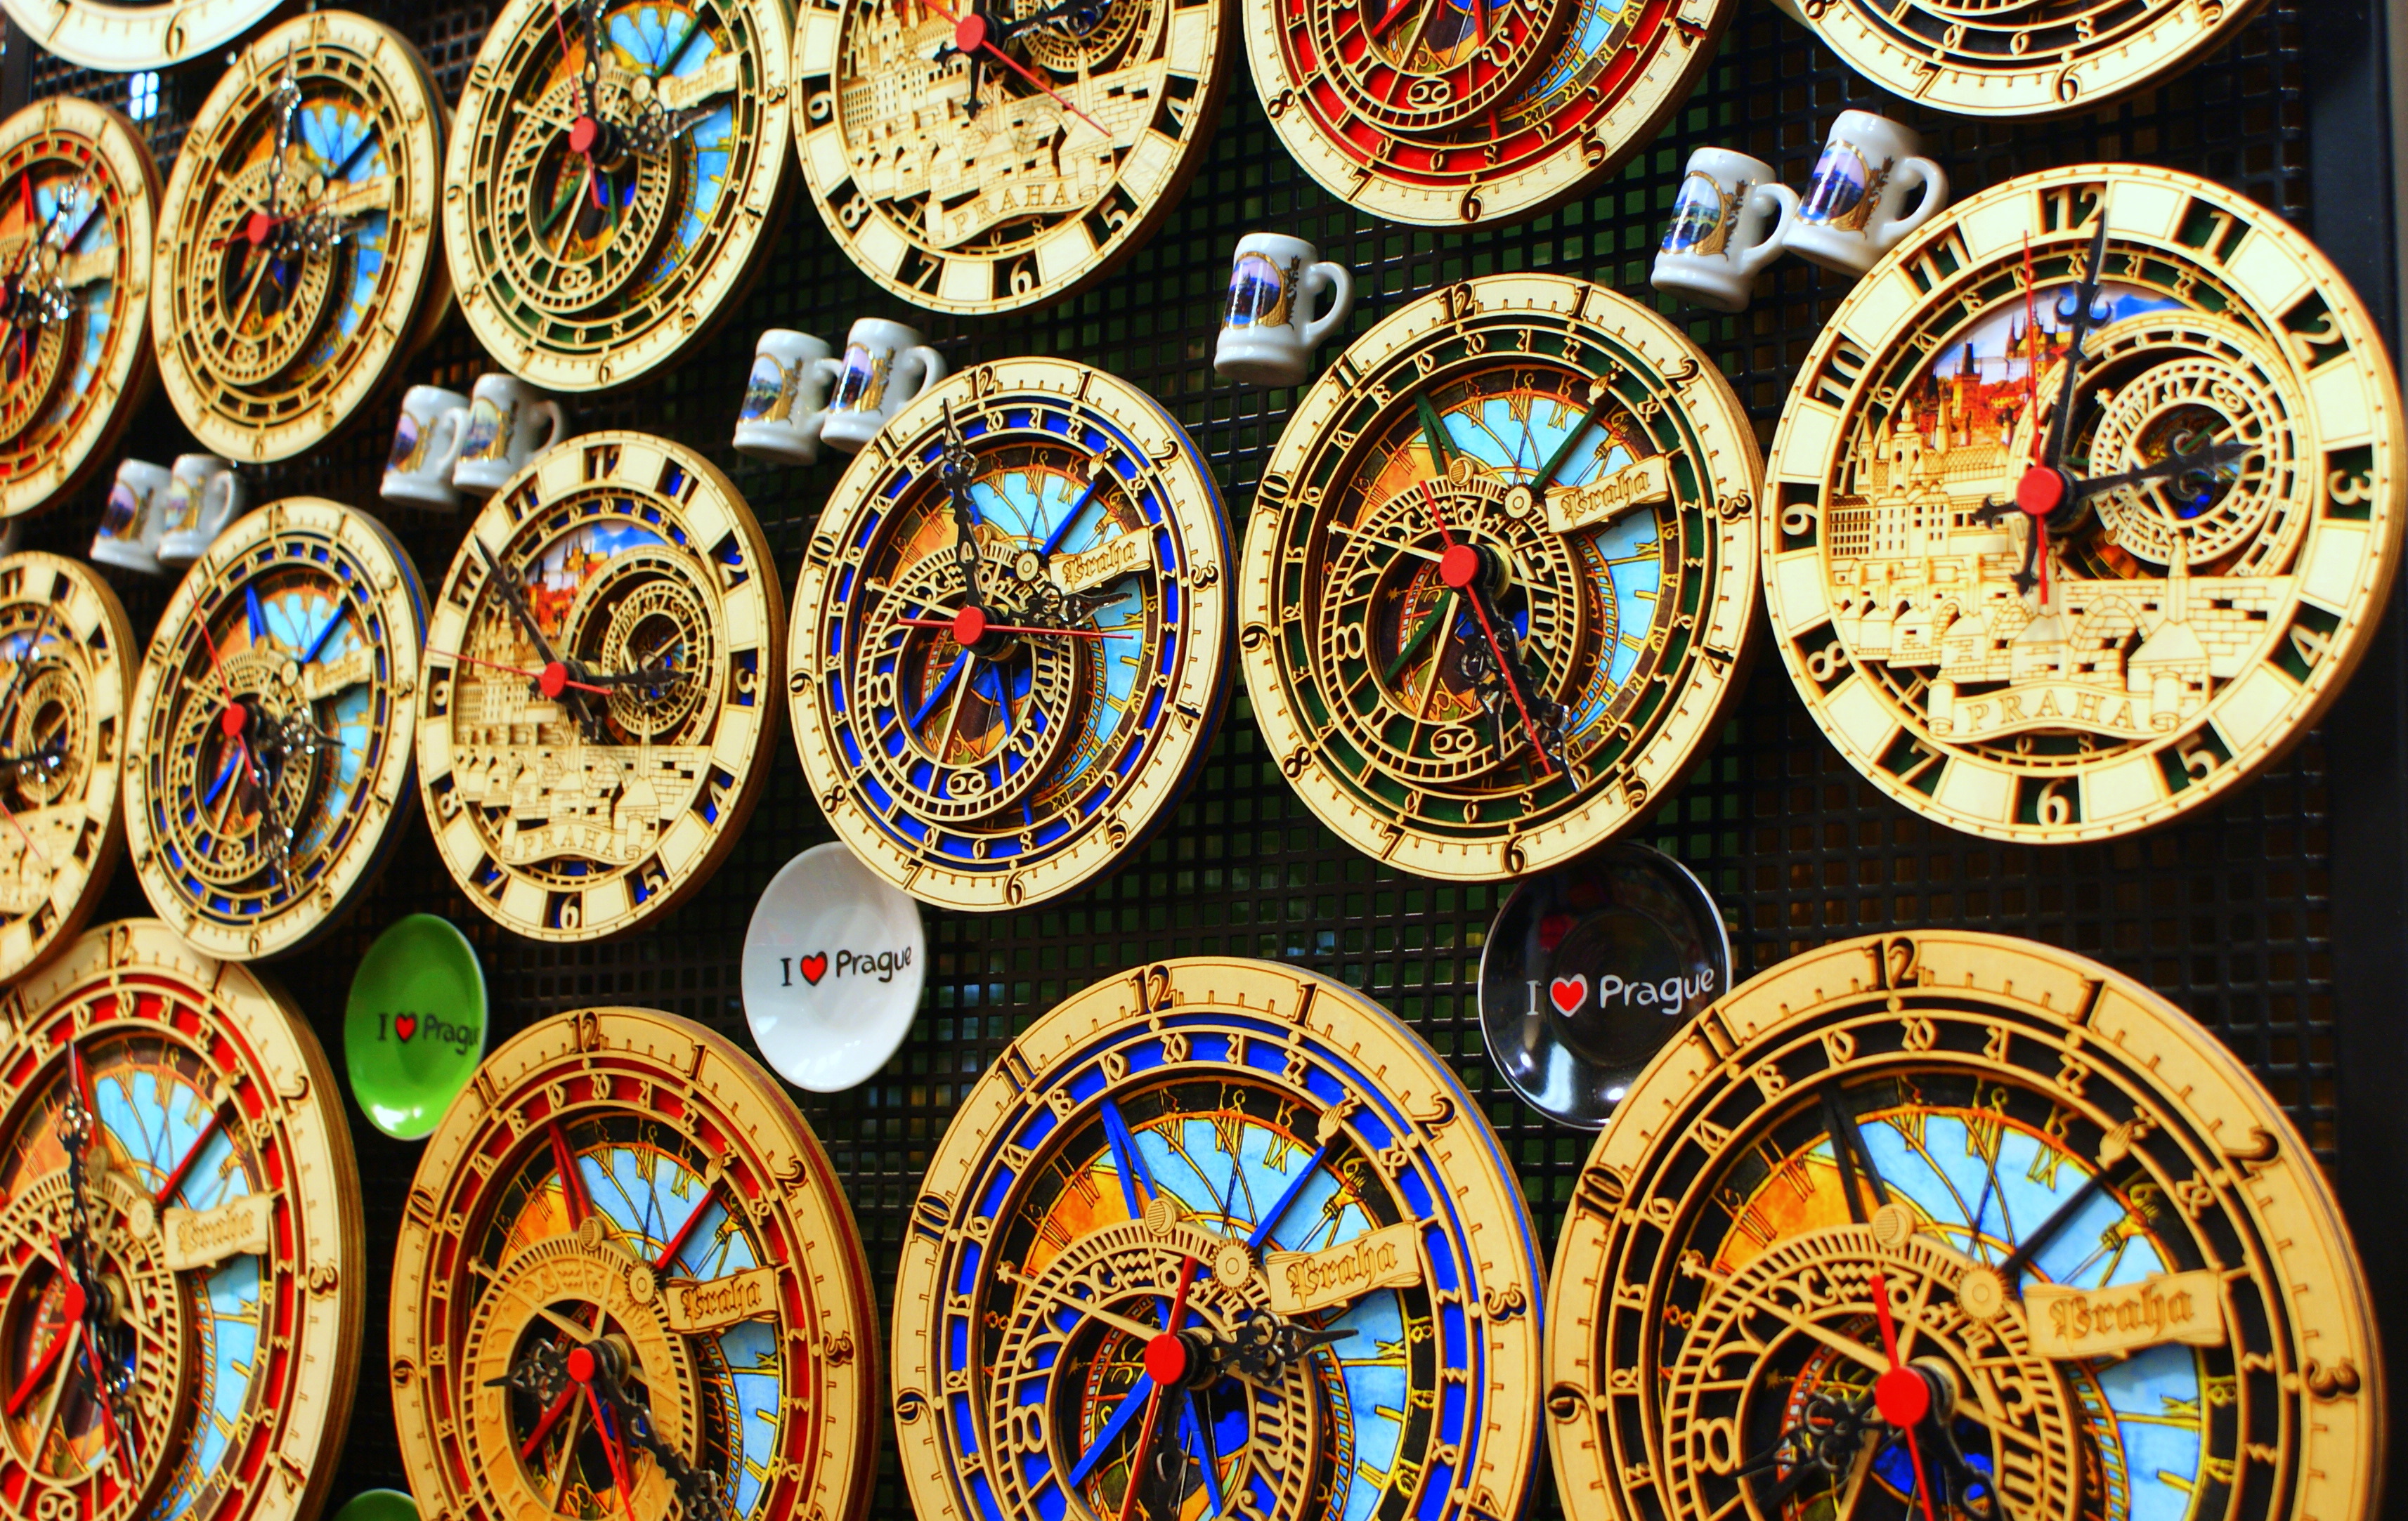 Prague clocks photo